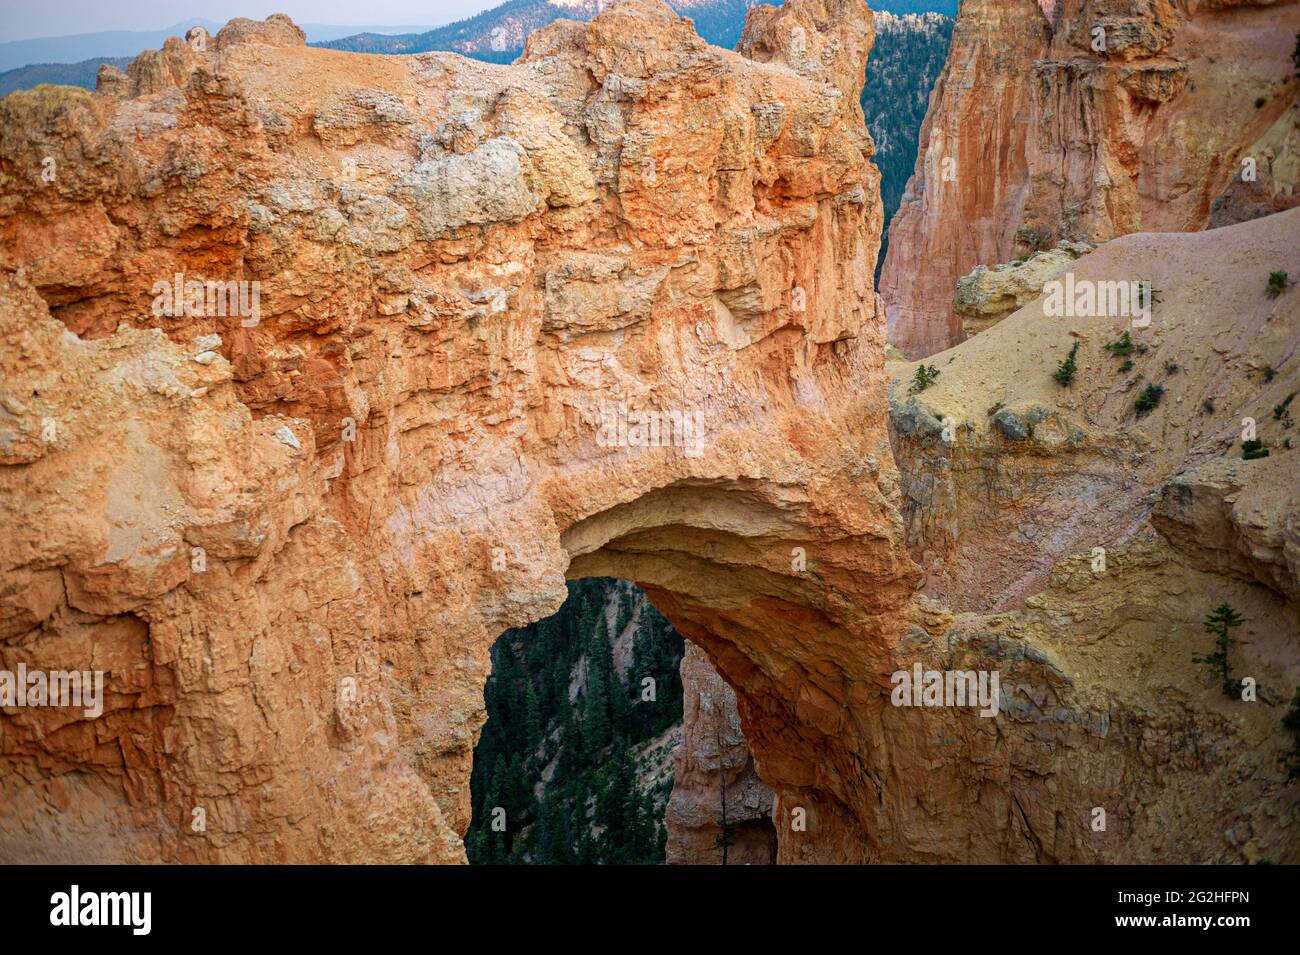 Natural Bridge, un enorme arco de roca roja de 85 pies tallado en roca roja sedimentaria por fuerzas geológicas durante millones de años. Parque Nacional del Cañón Bryce, Utah, Estados Unidos Foto de stock